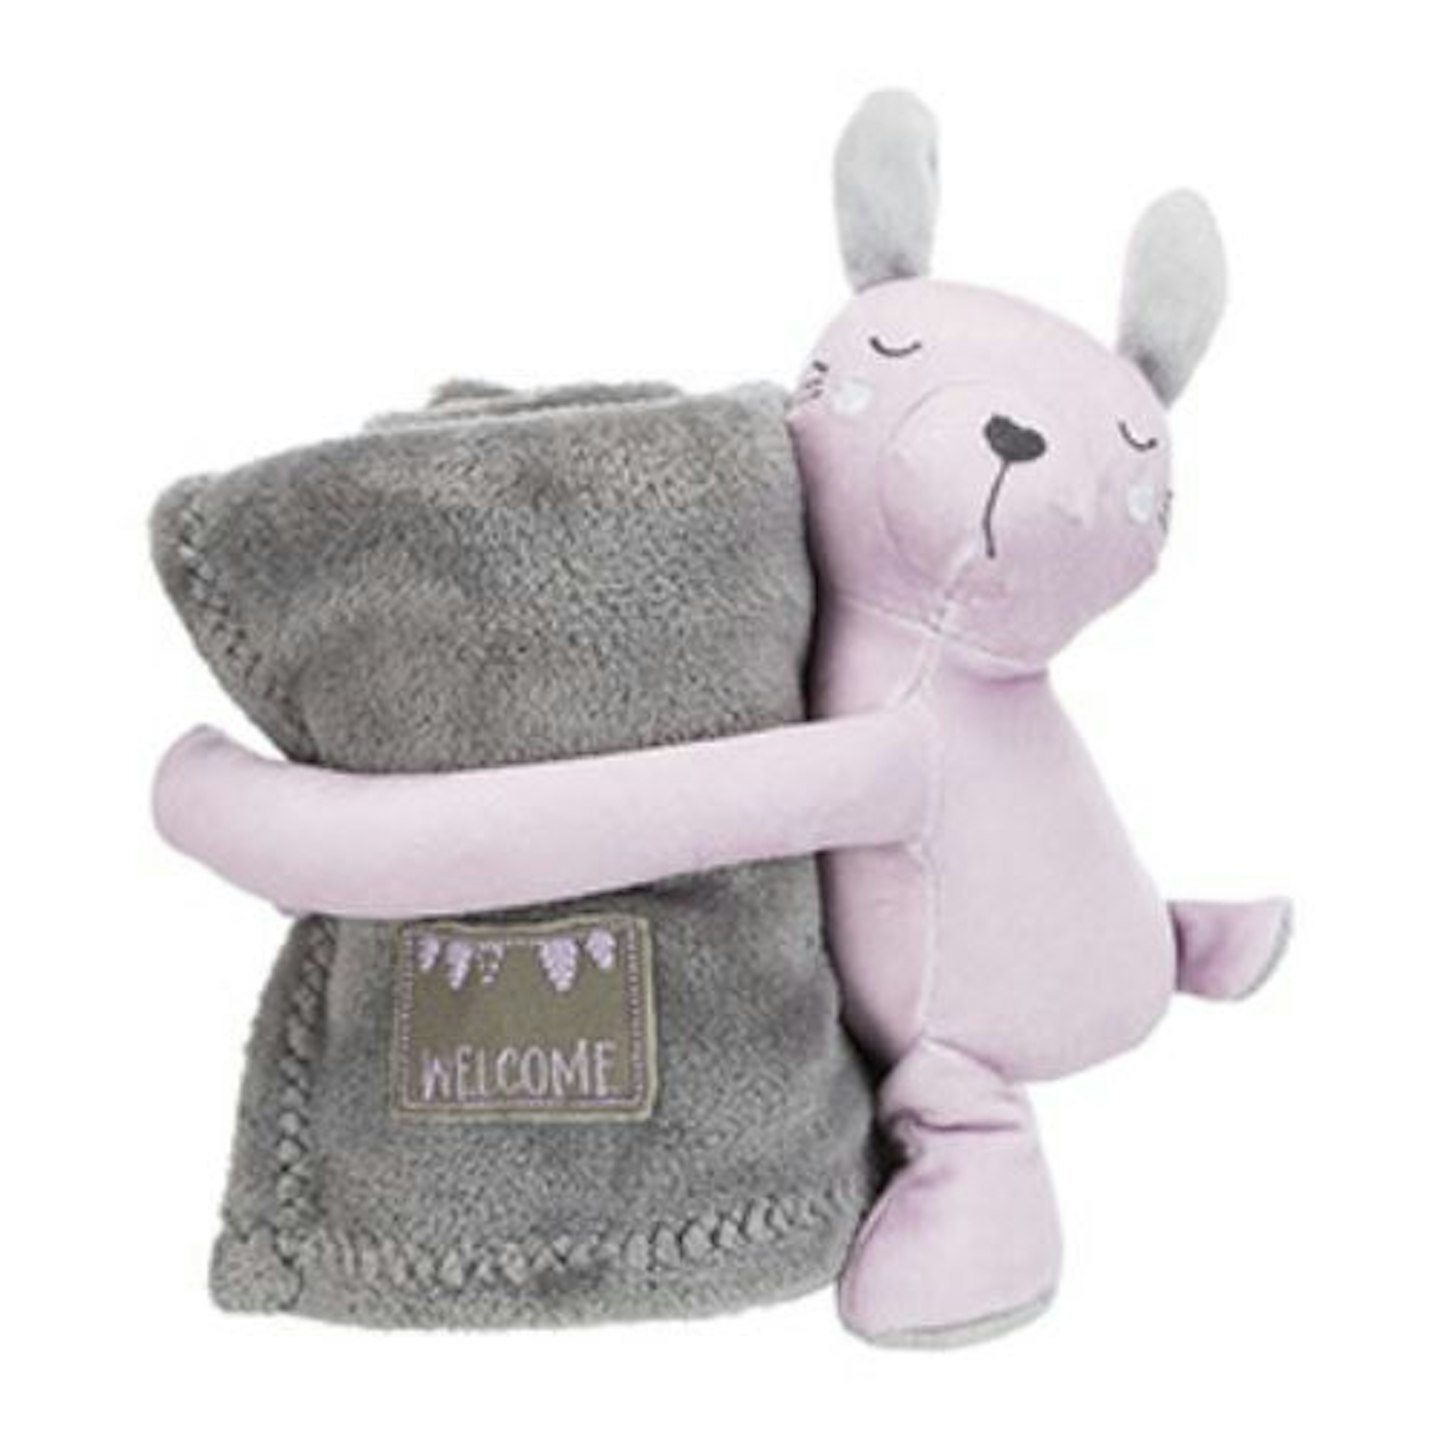 Trixie Junior Cuddly Set Puppy Blanket/Rabbit Plush